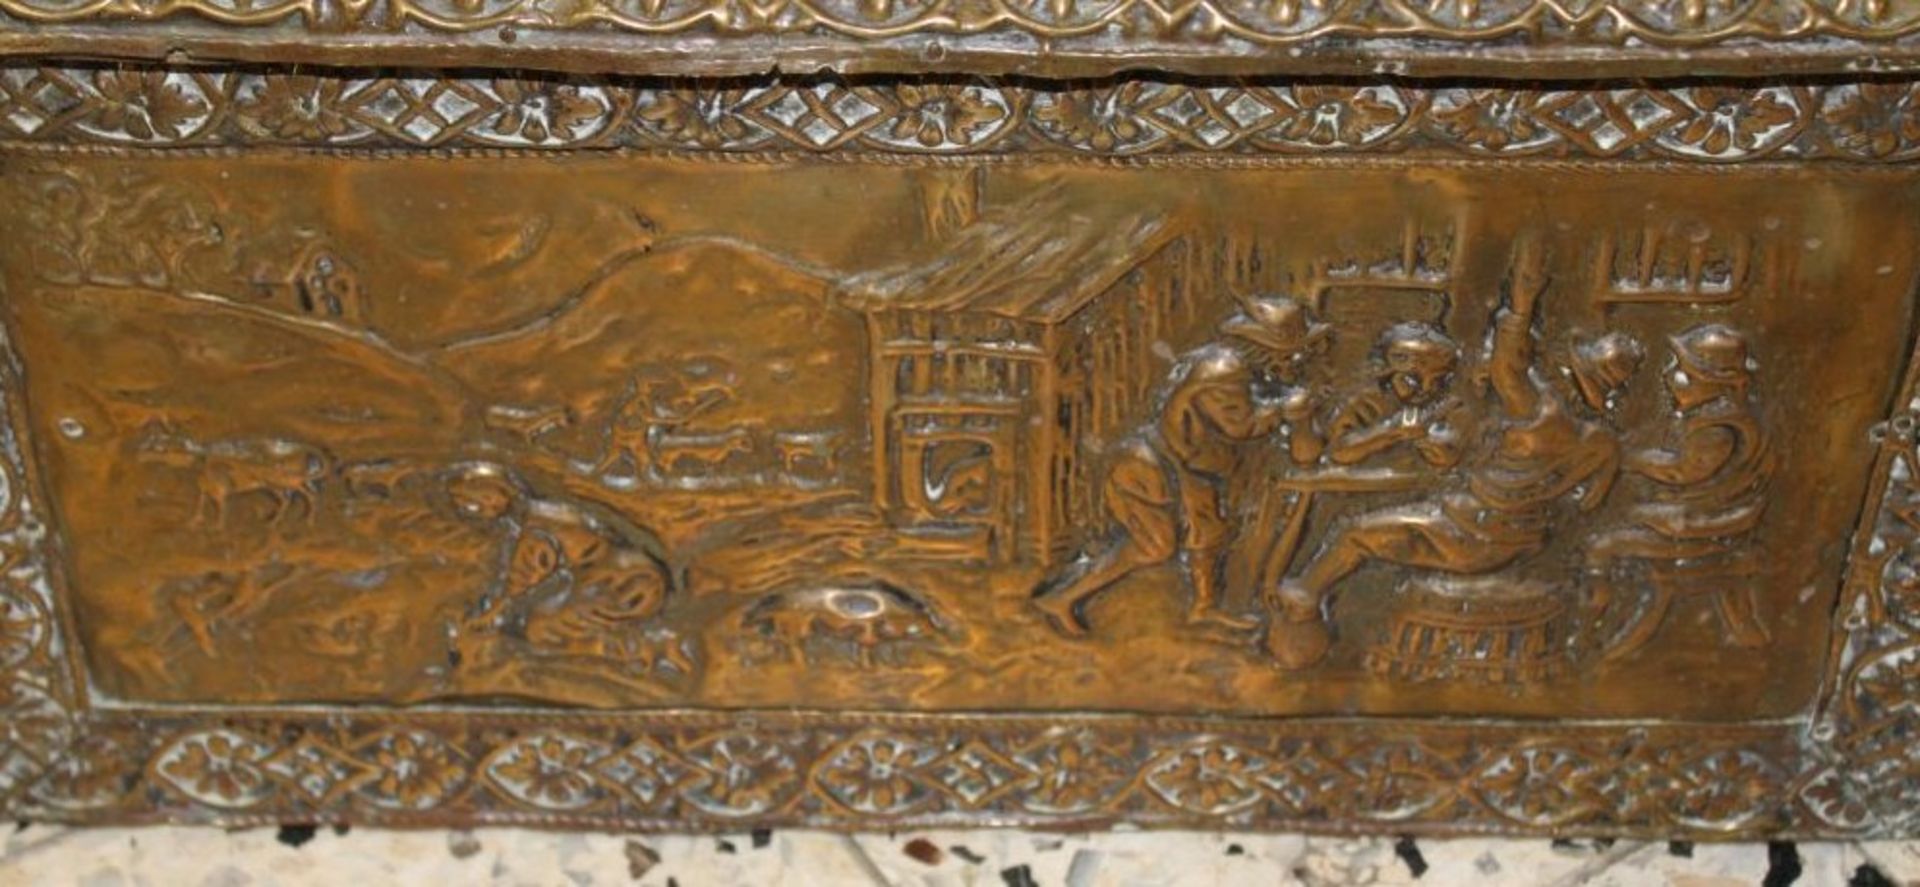 Kasten für Anfachholz / coal box, Messing über Holz, 1. H. 20. Jhd., England, H-35cm B-49cm T-34cm - Bild 3 aus 5